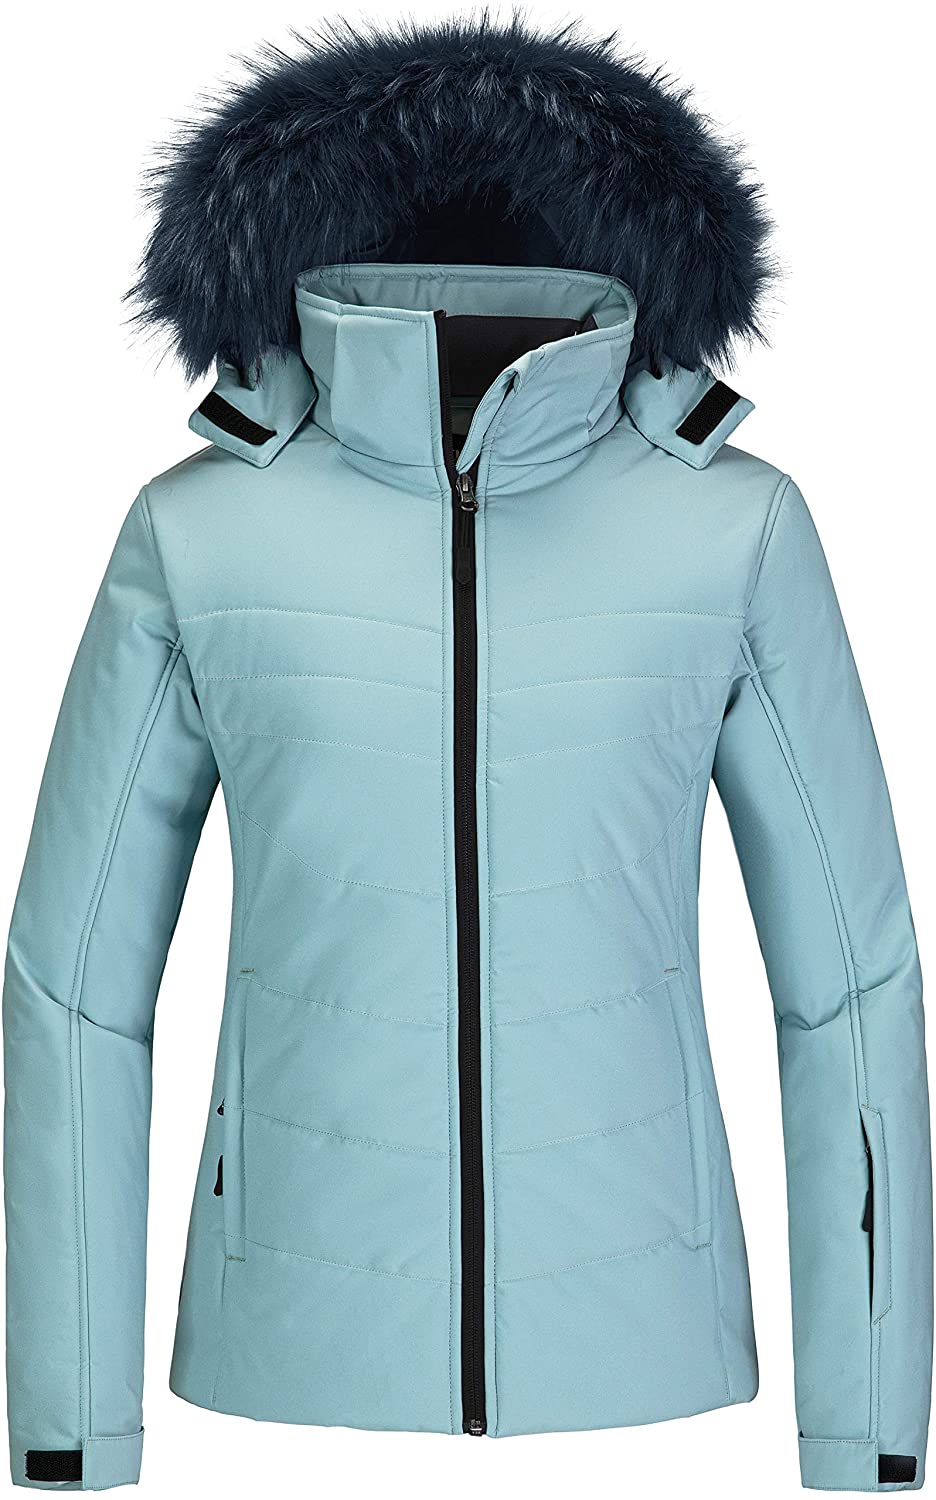 Skieer Girl's Waterproof Ski Jacket Windproof Winter Jacket Fur Hooded Rain Coat 